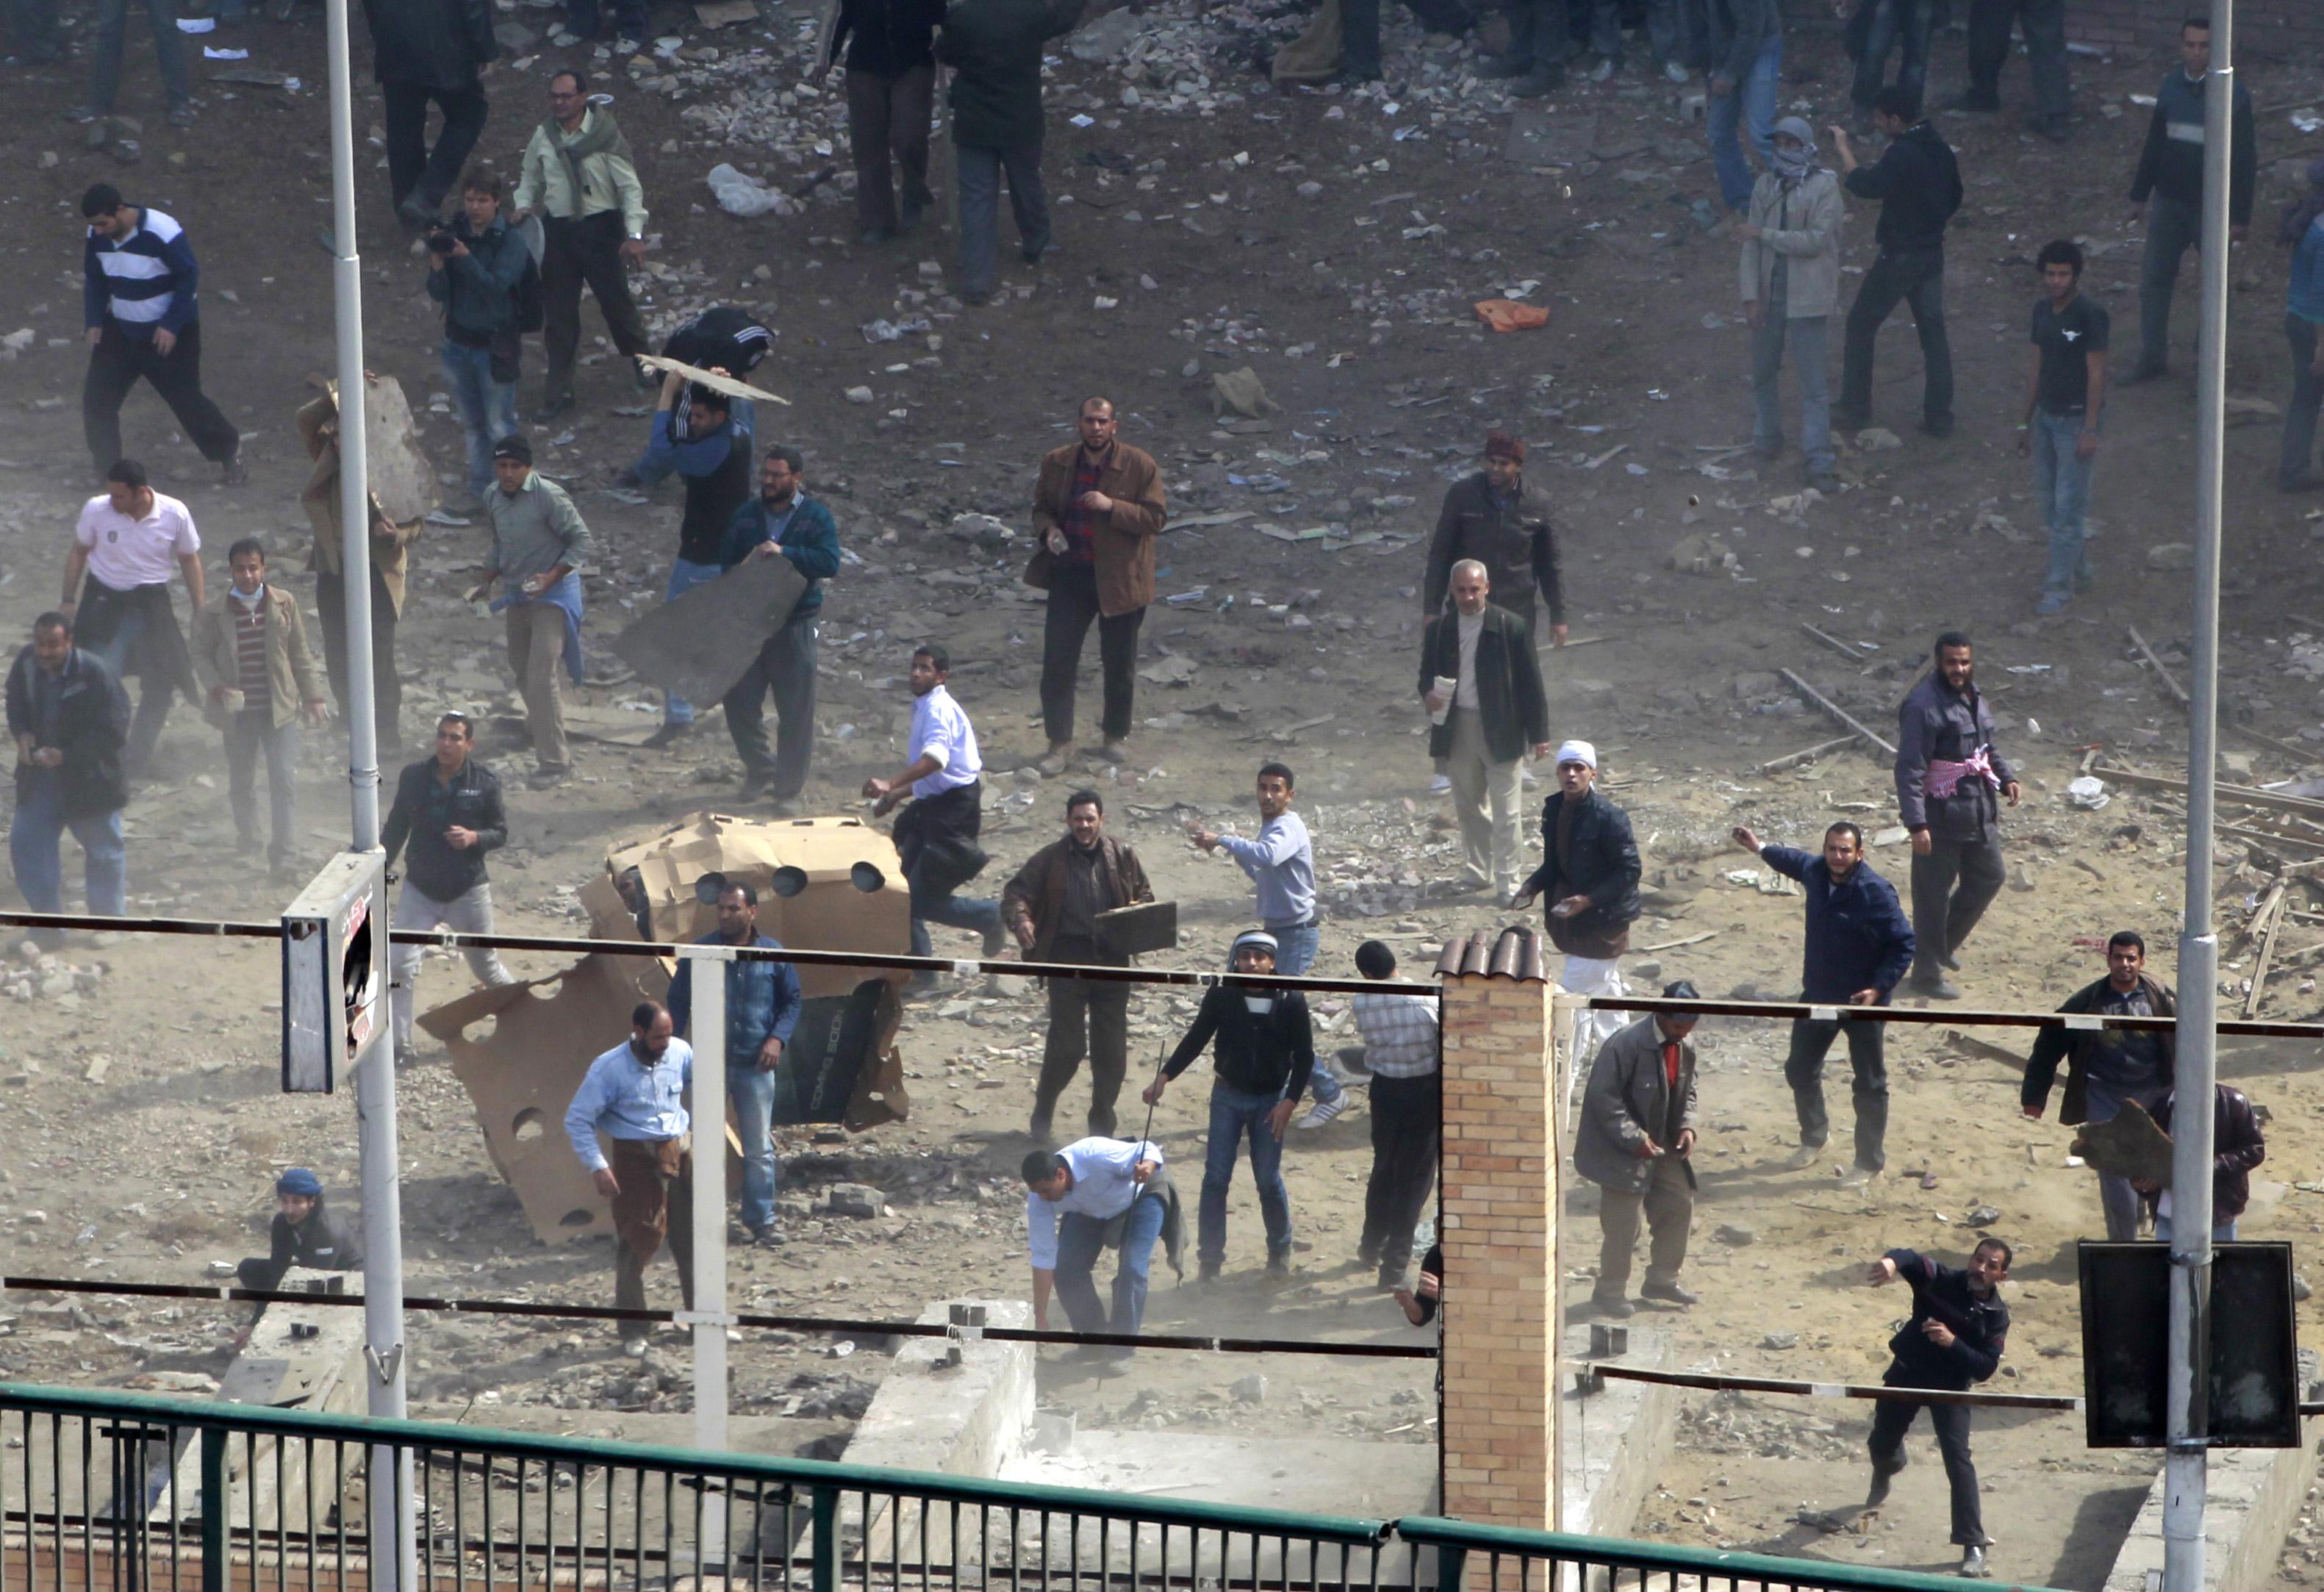 Πετροπόλεμος αναμέσα σε υποστηρικτές του Μουμπάρακ και αντικυβερνητικούς διαδηλωτές. ΦΩΤΟ REUTERS